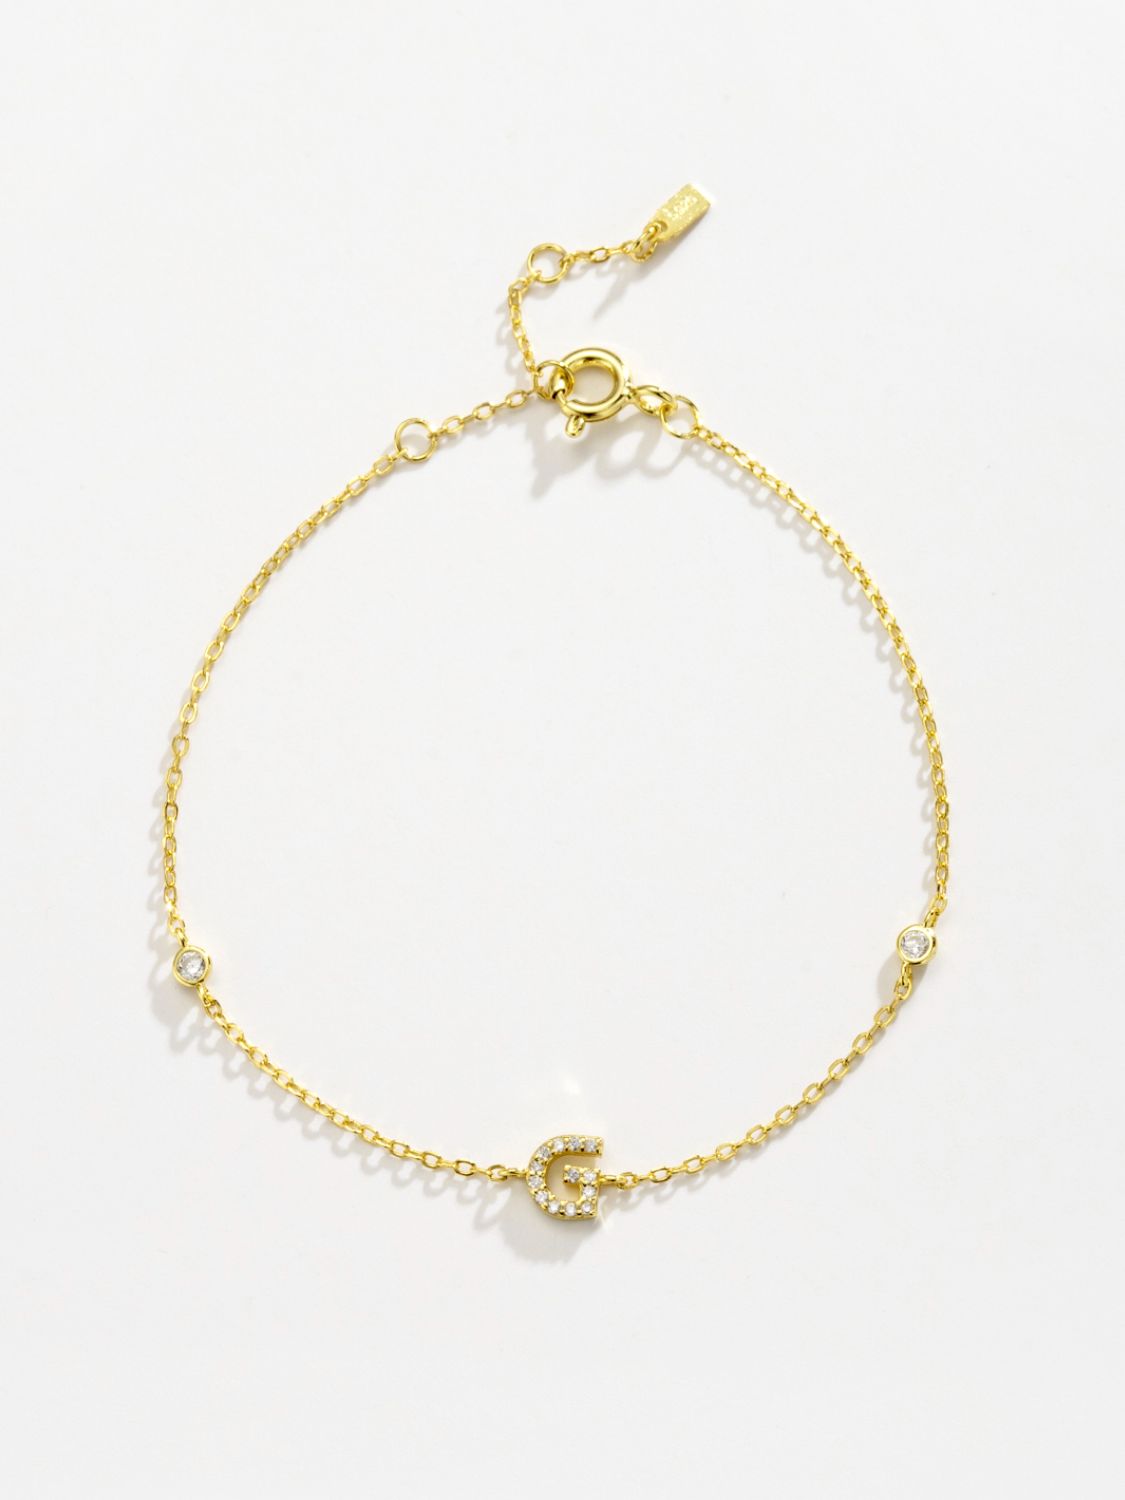 Zircon 925 Sterling Silver Bracelet - Women’s Jewelry - Bracelets - 2 - 2024